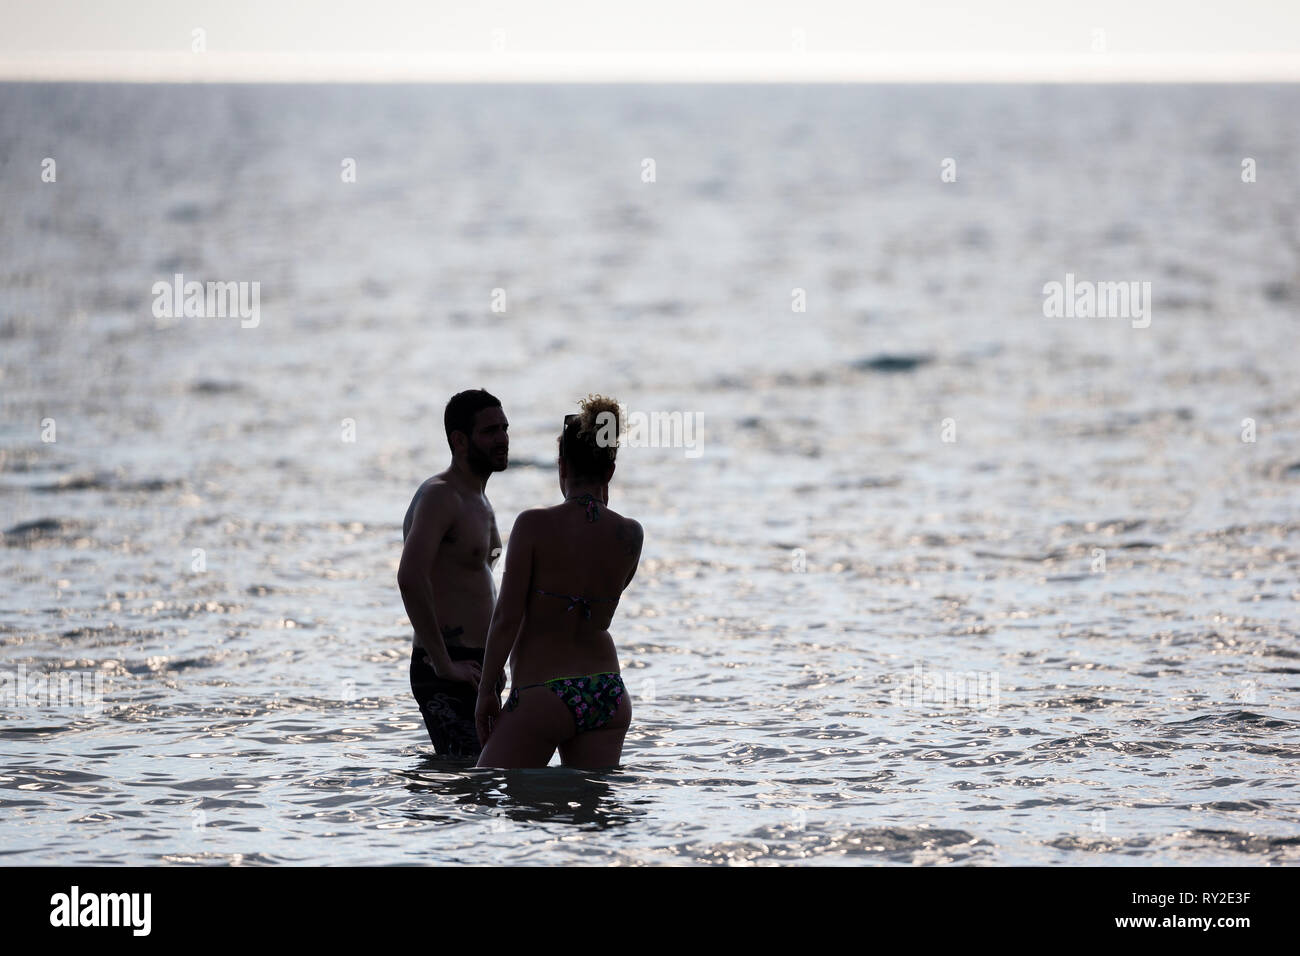 Ein Paar steht im Wasser am Golf von Mexiko bei THEMENBILD Florida, 06.02.2017 Bildnachweis: Mario Hommes / HH-fotografia Foto Stock